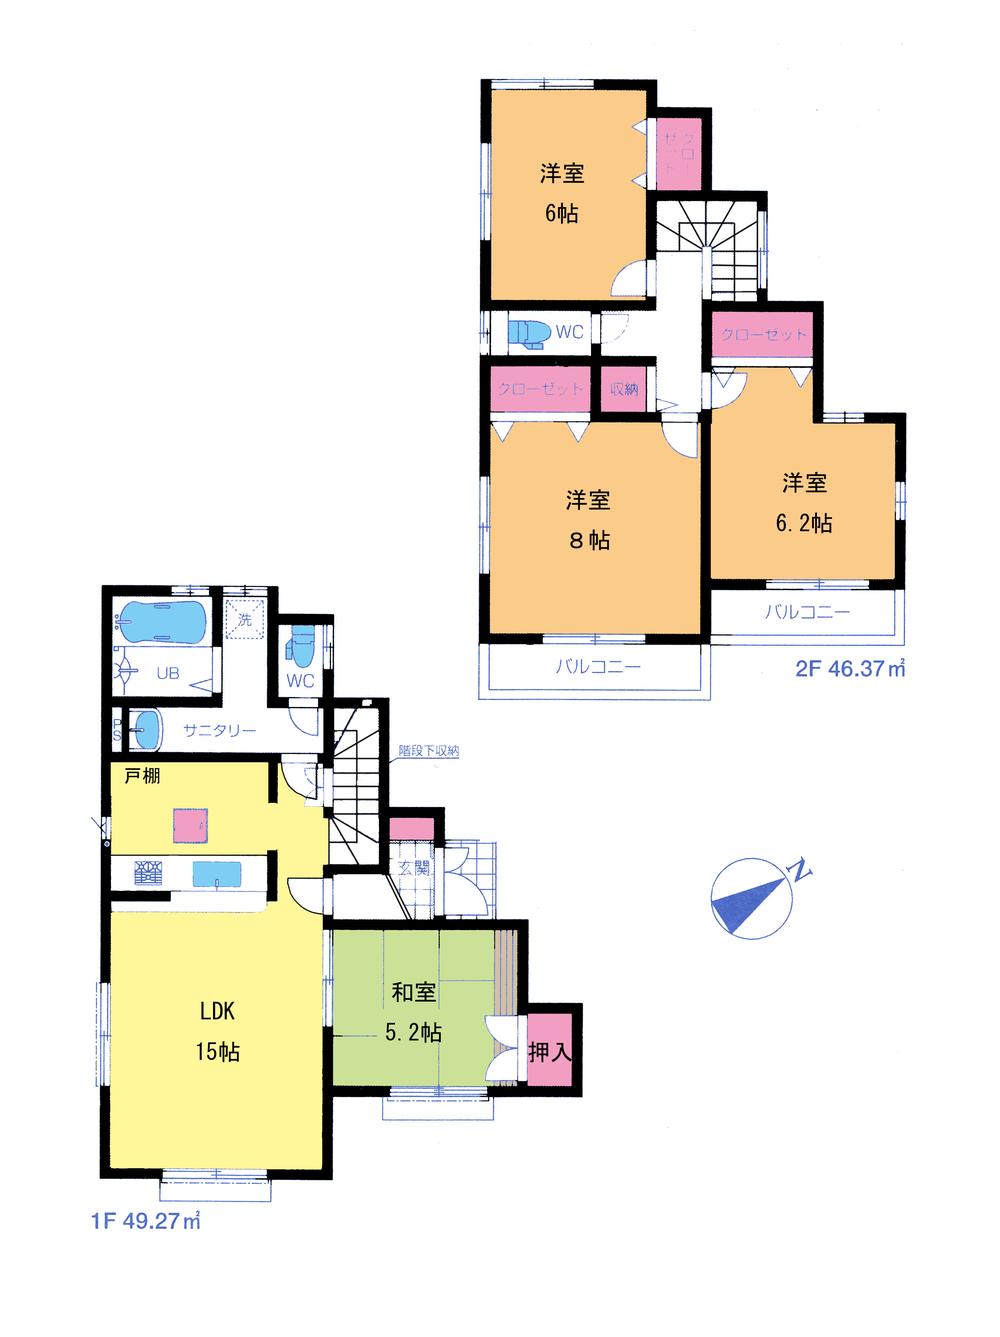 Floor plan. 31,800,000 yen, 4LDK, Land area 94.6 sq m , Building area 95.6 sq m floor plan